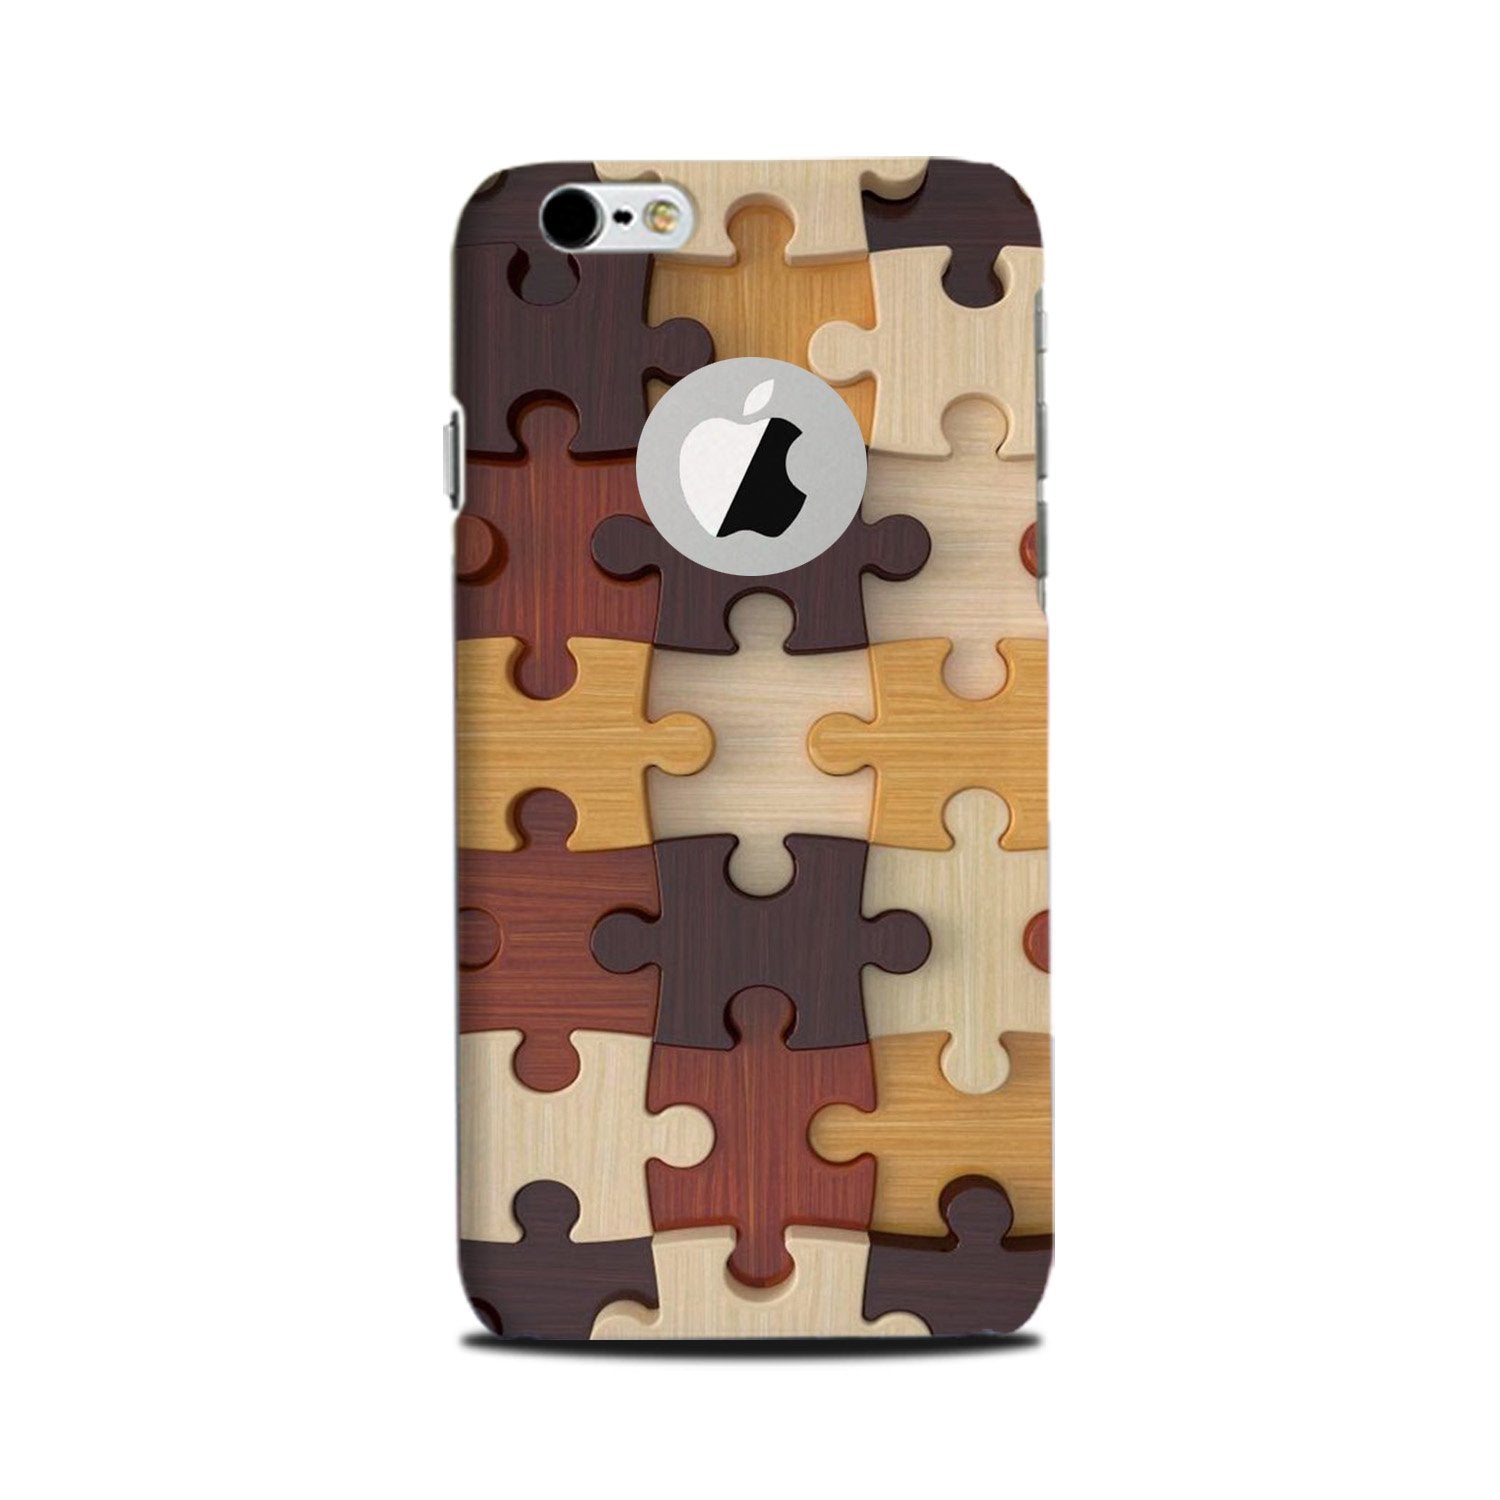 Puzzle Pattern Case for iPhone 6 Plus / 6s Plus logo cut(Design No. 217)